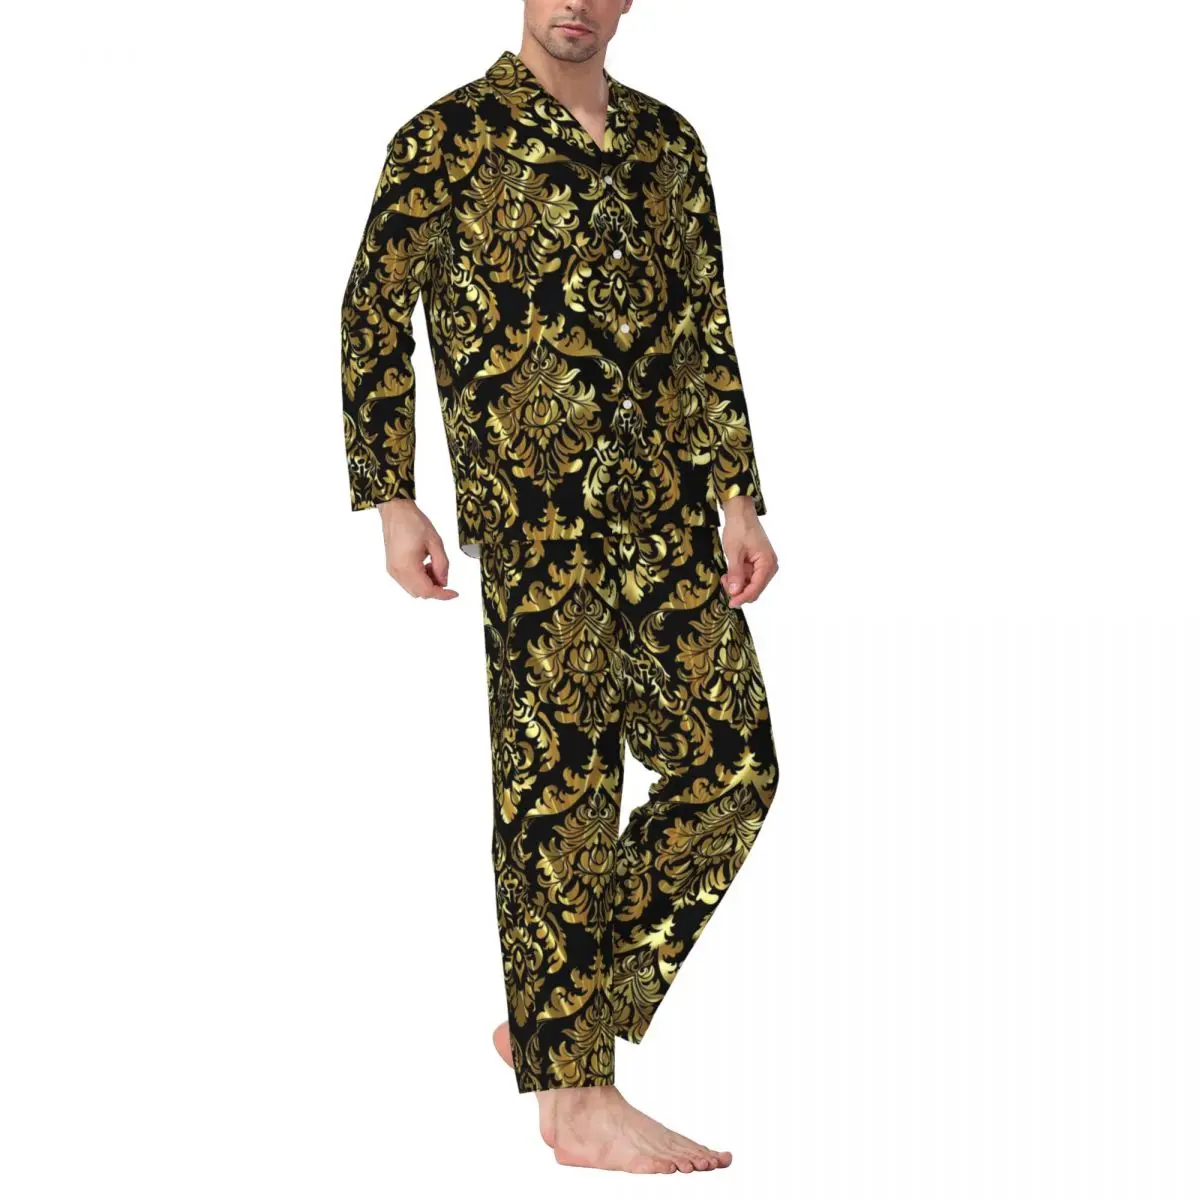 

Пижама Мужская Дамасская с цветочным принтом, одежда для сна, черно-золотистый Ретро пижамный комплект из двух предметов, мягкий домашний костюм оверсайз с длинным рукавом